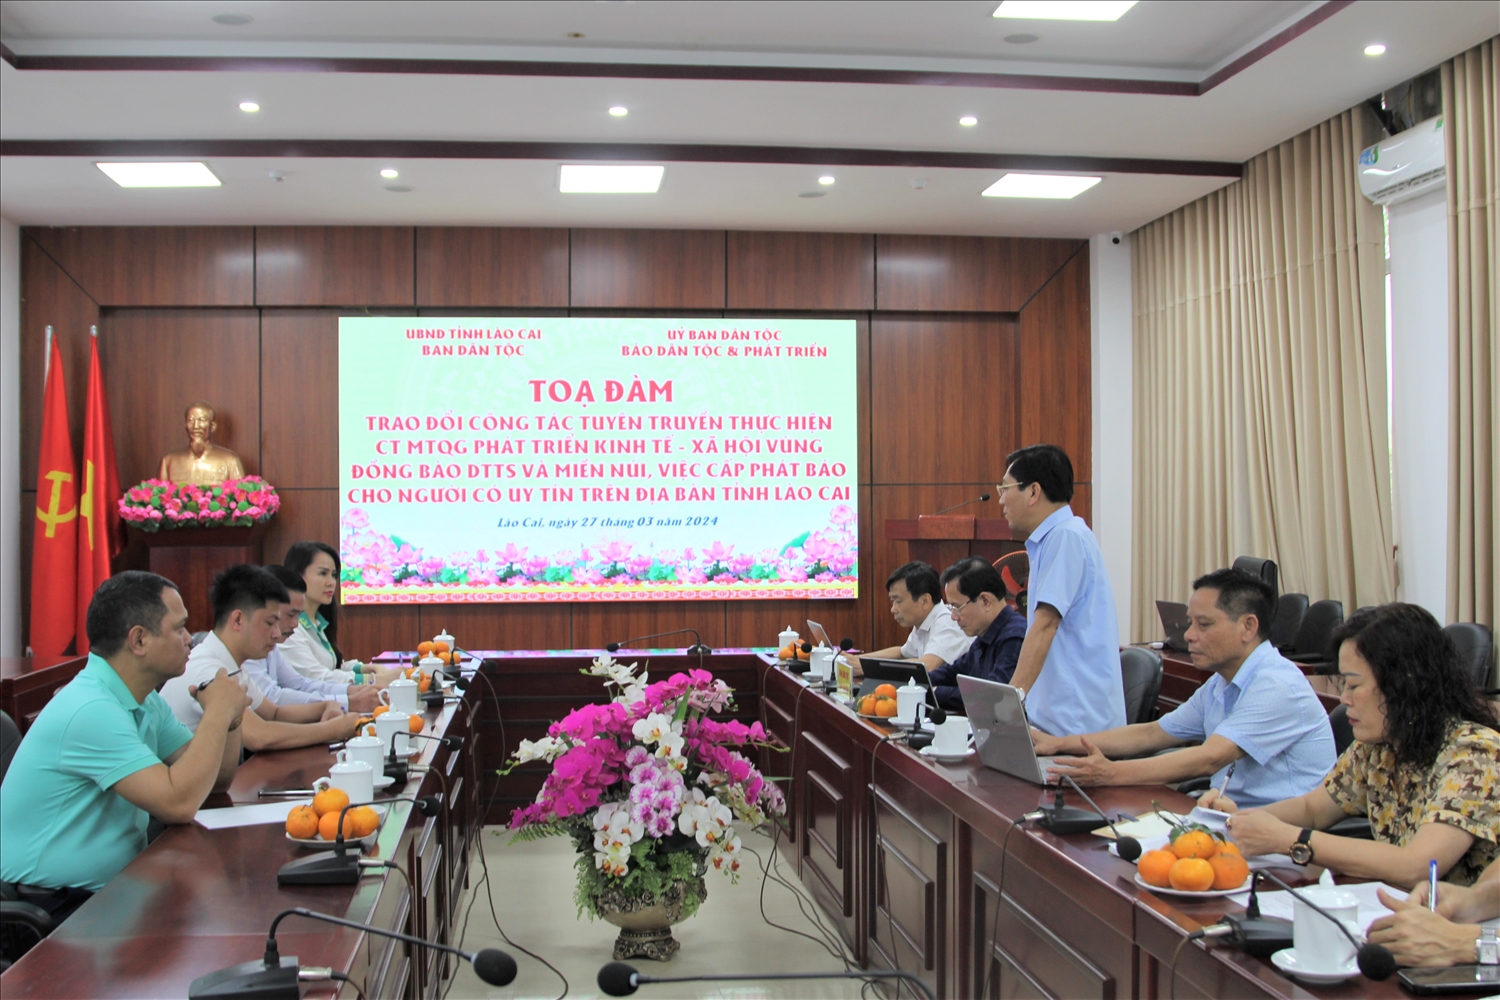 Đoàn công tác của Báo Dân tộc và Phát triển làm việc với Ban Dân tộc tỉnh Lào Cai